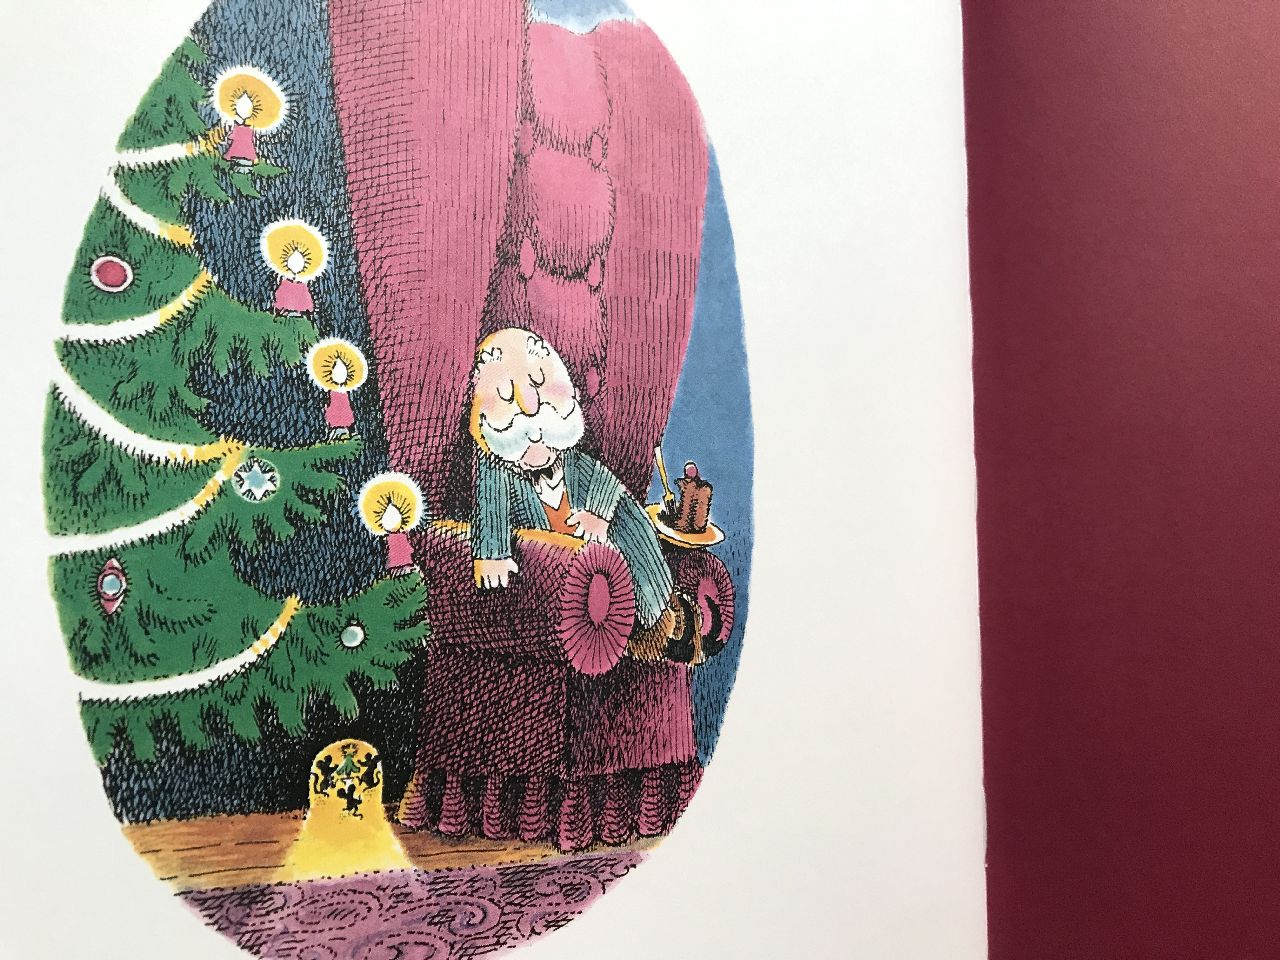 Robert Barry, L'albero di Natale del signor Vitale, Marameo